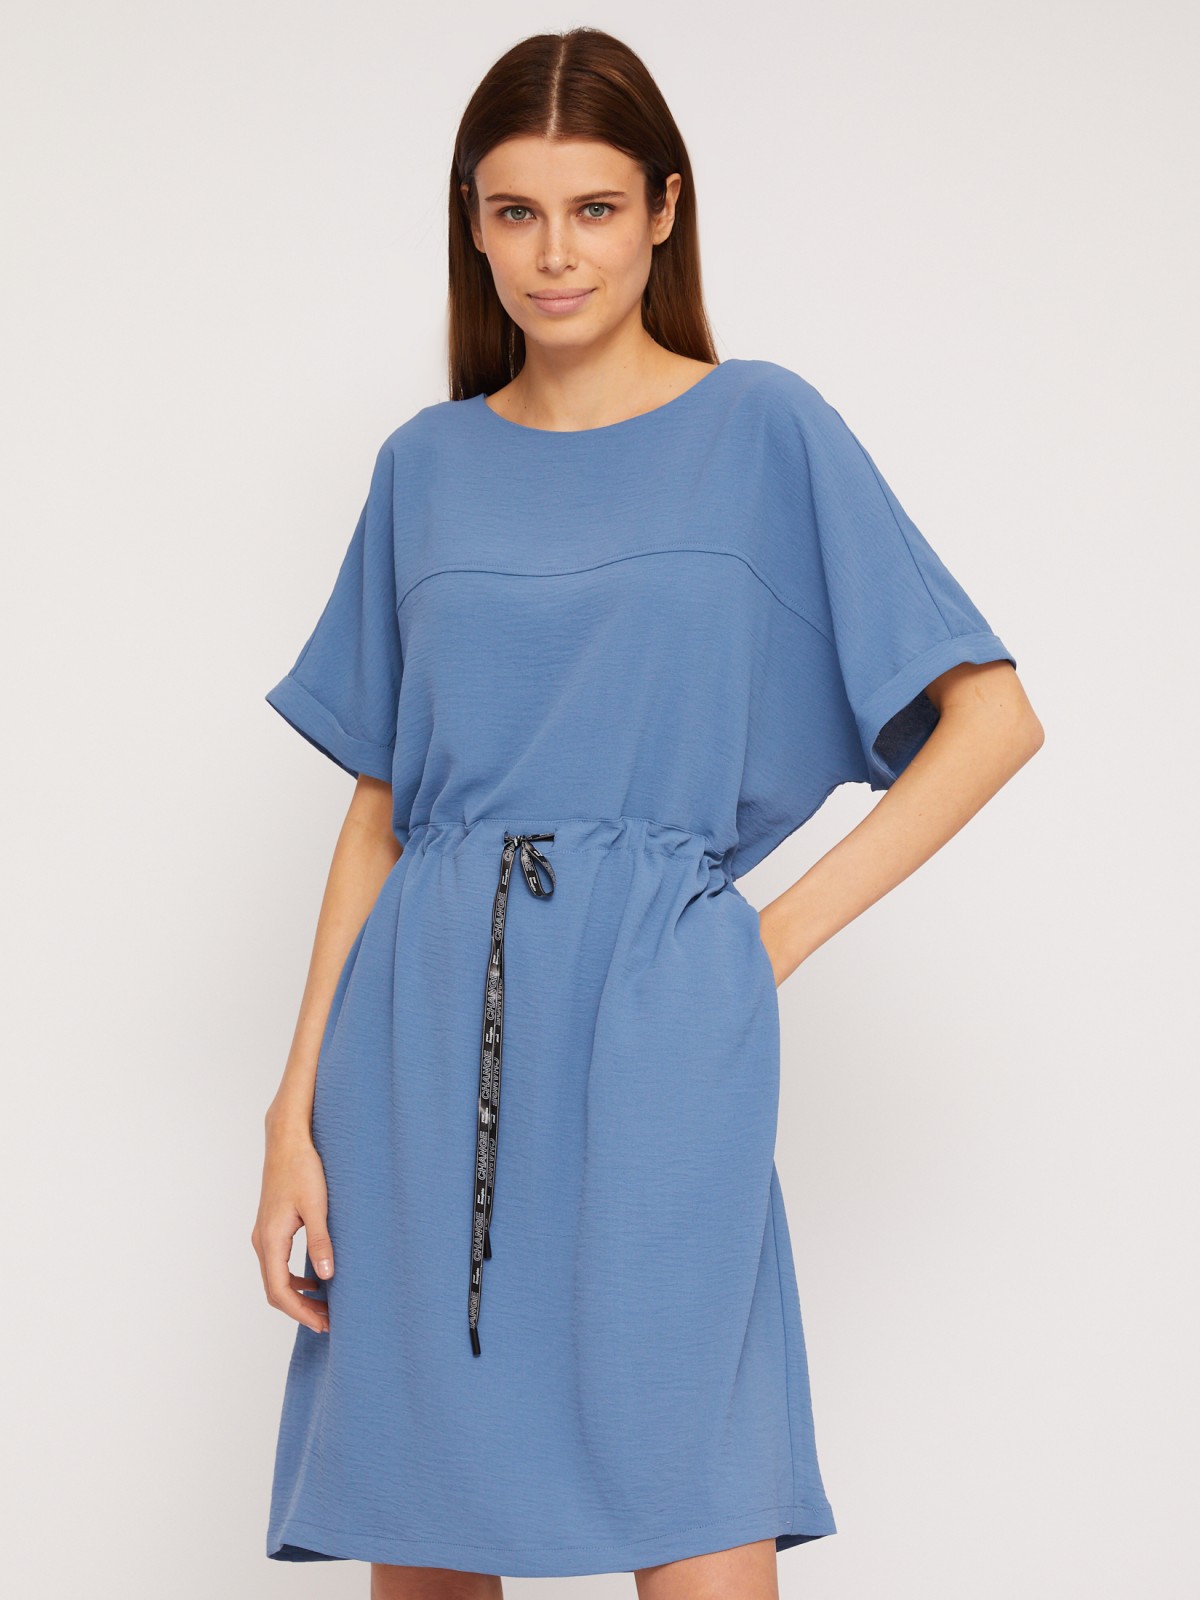 Платье-футболка мини с кулиской на талии zolla 02423824Y773, цвет голубой, размер M - фото 3